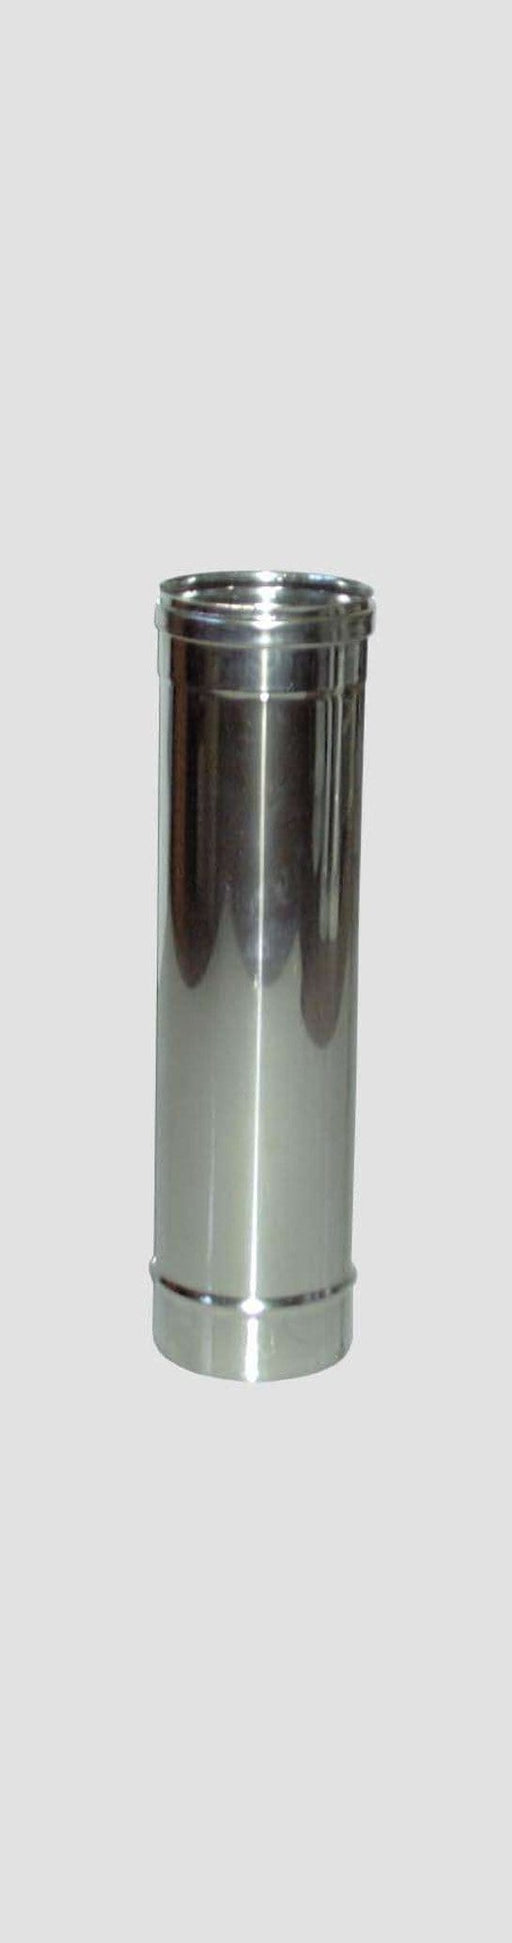 Tubo Diritto Inox AISI 304 per Stufe - Altezza 50 cm - Diametro 12 cm MillStore (2499317)